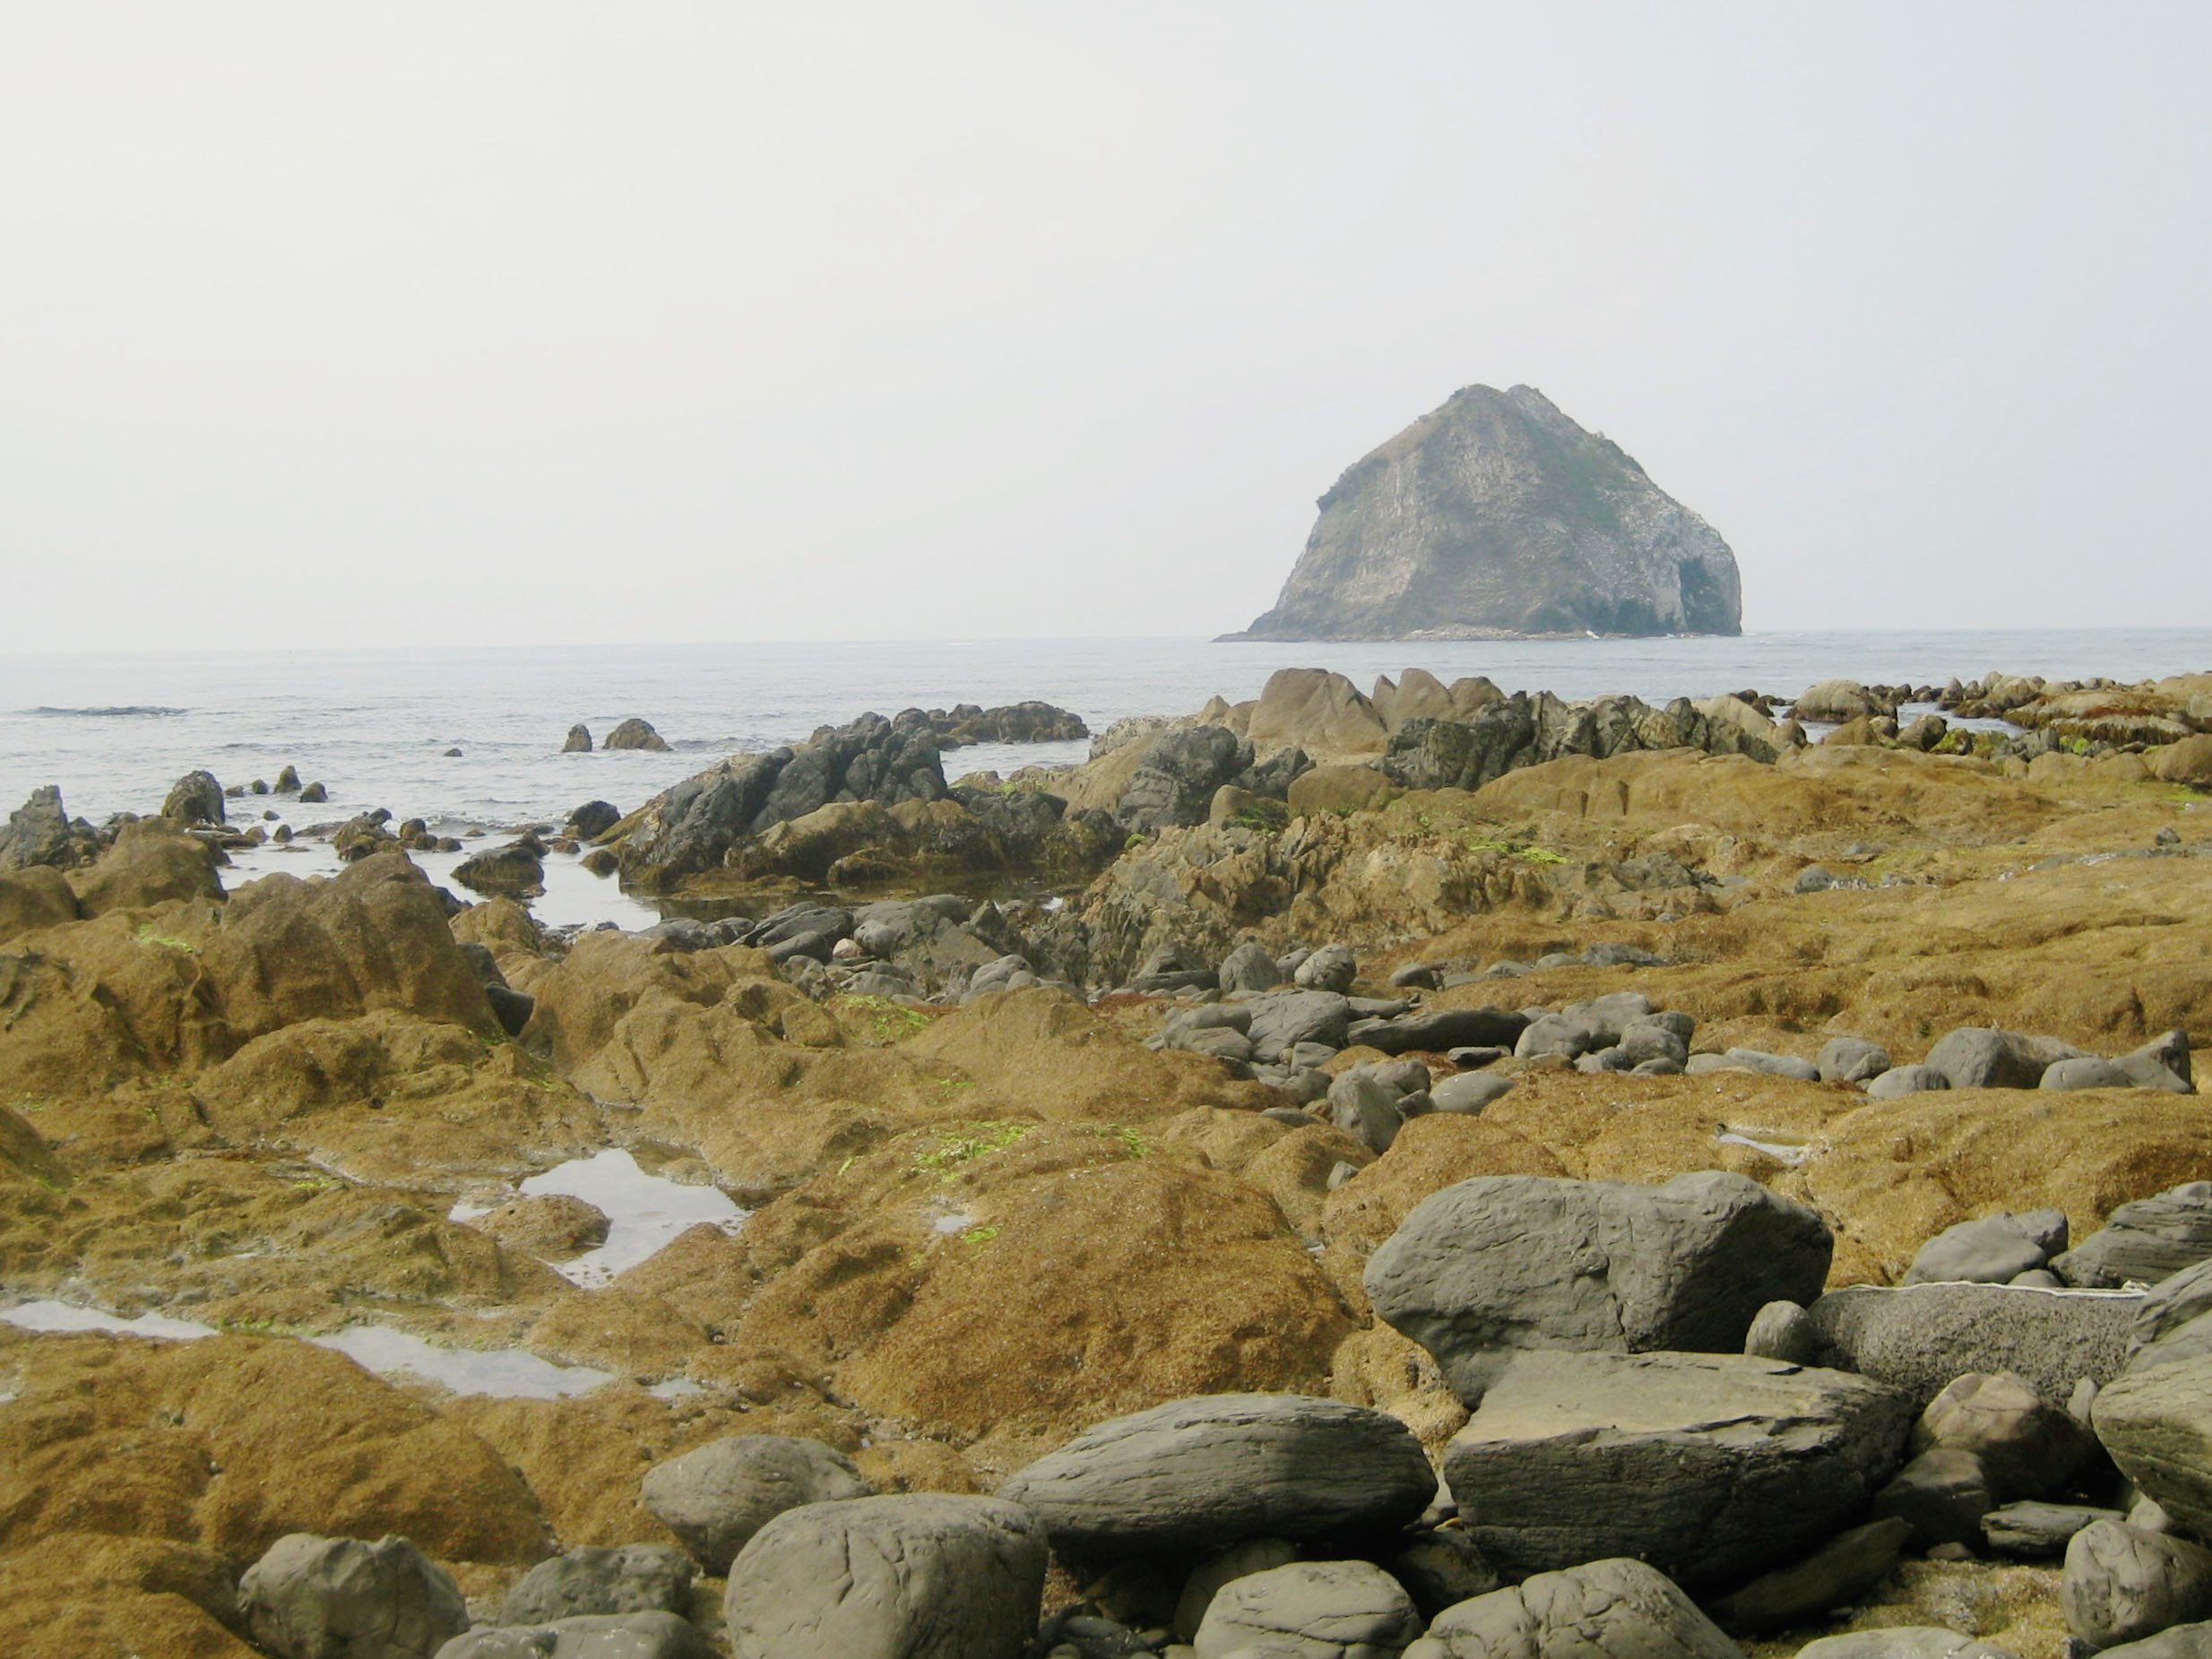 福岡 玄海島で玄界灘と震災に耽る Trip Com 福岡の旅のブログ